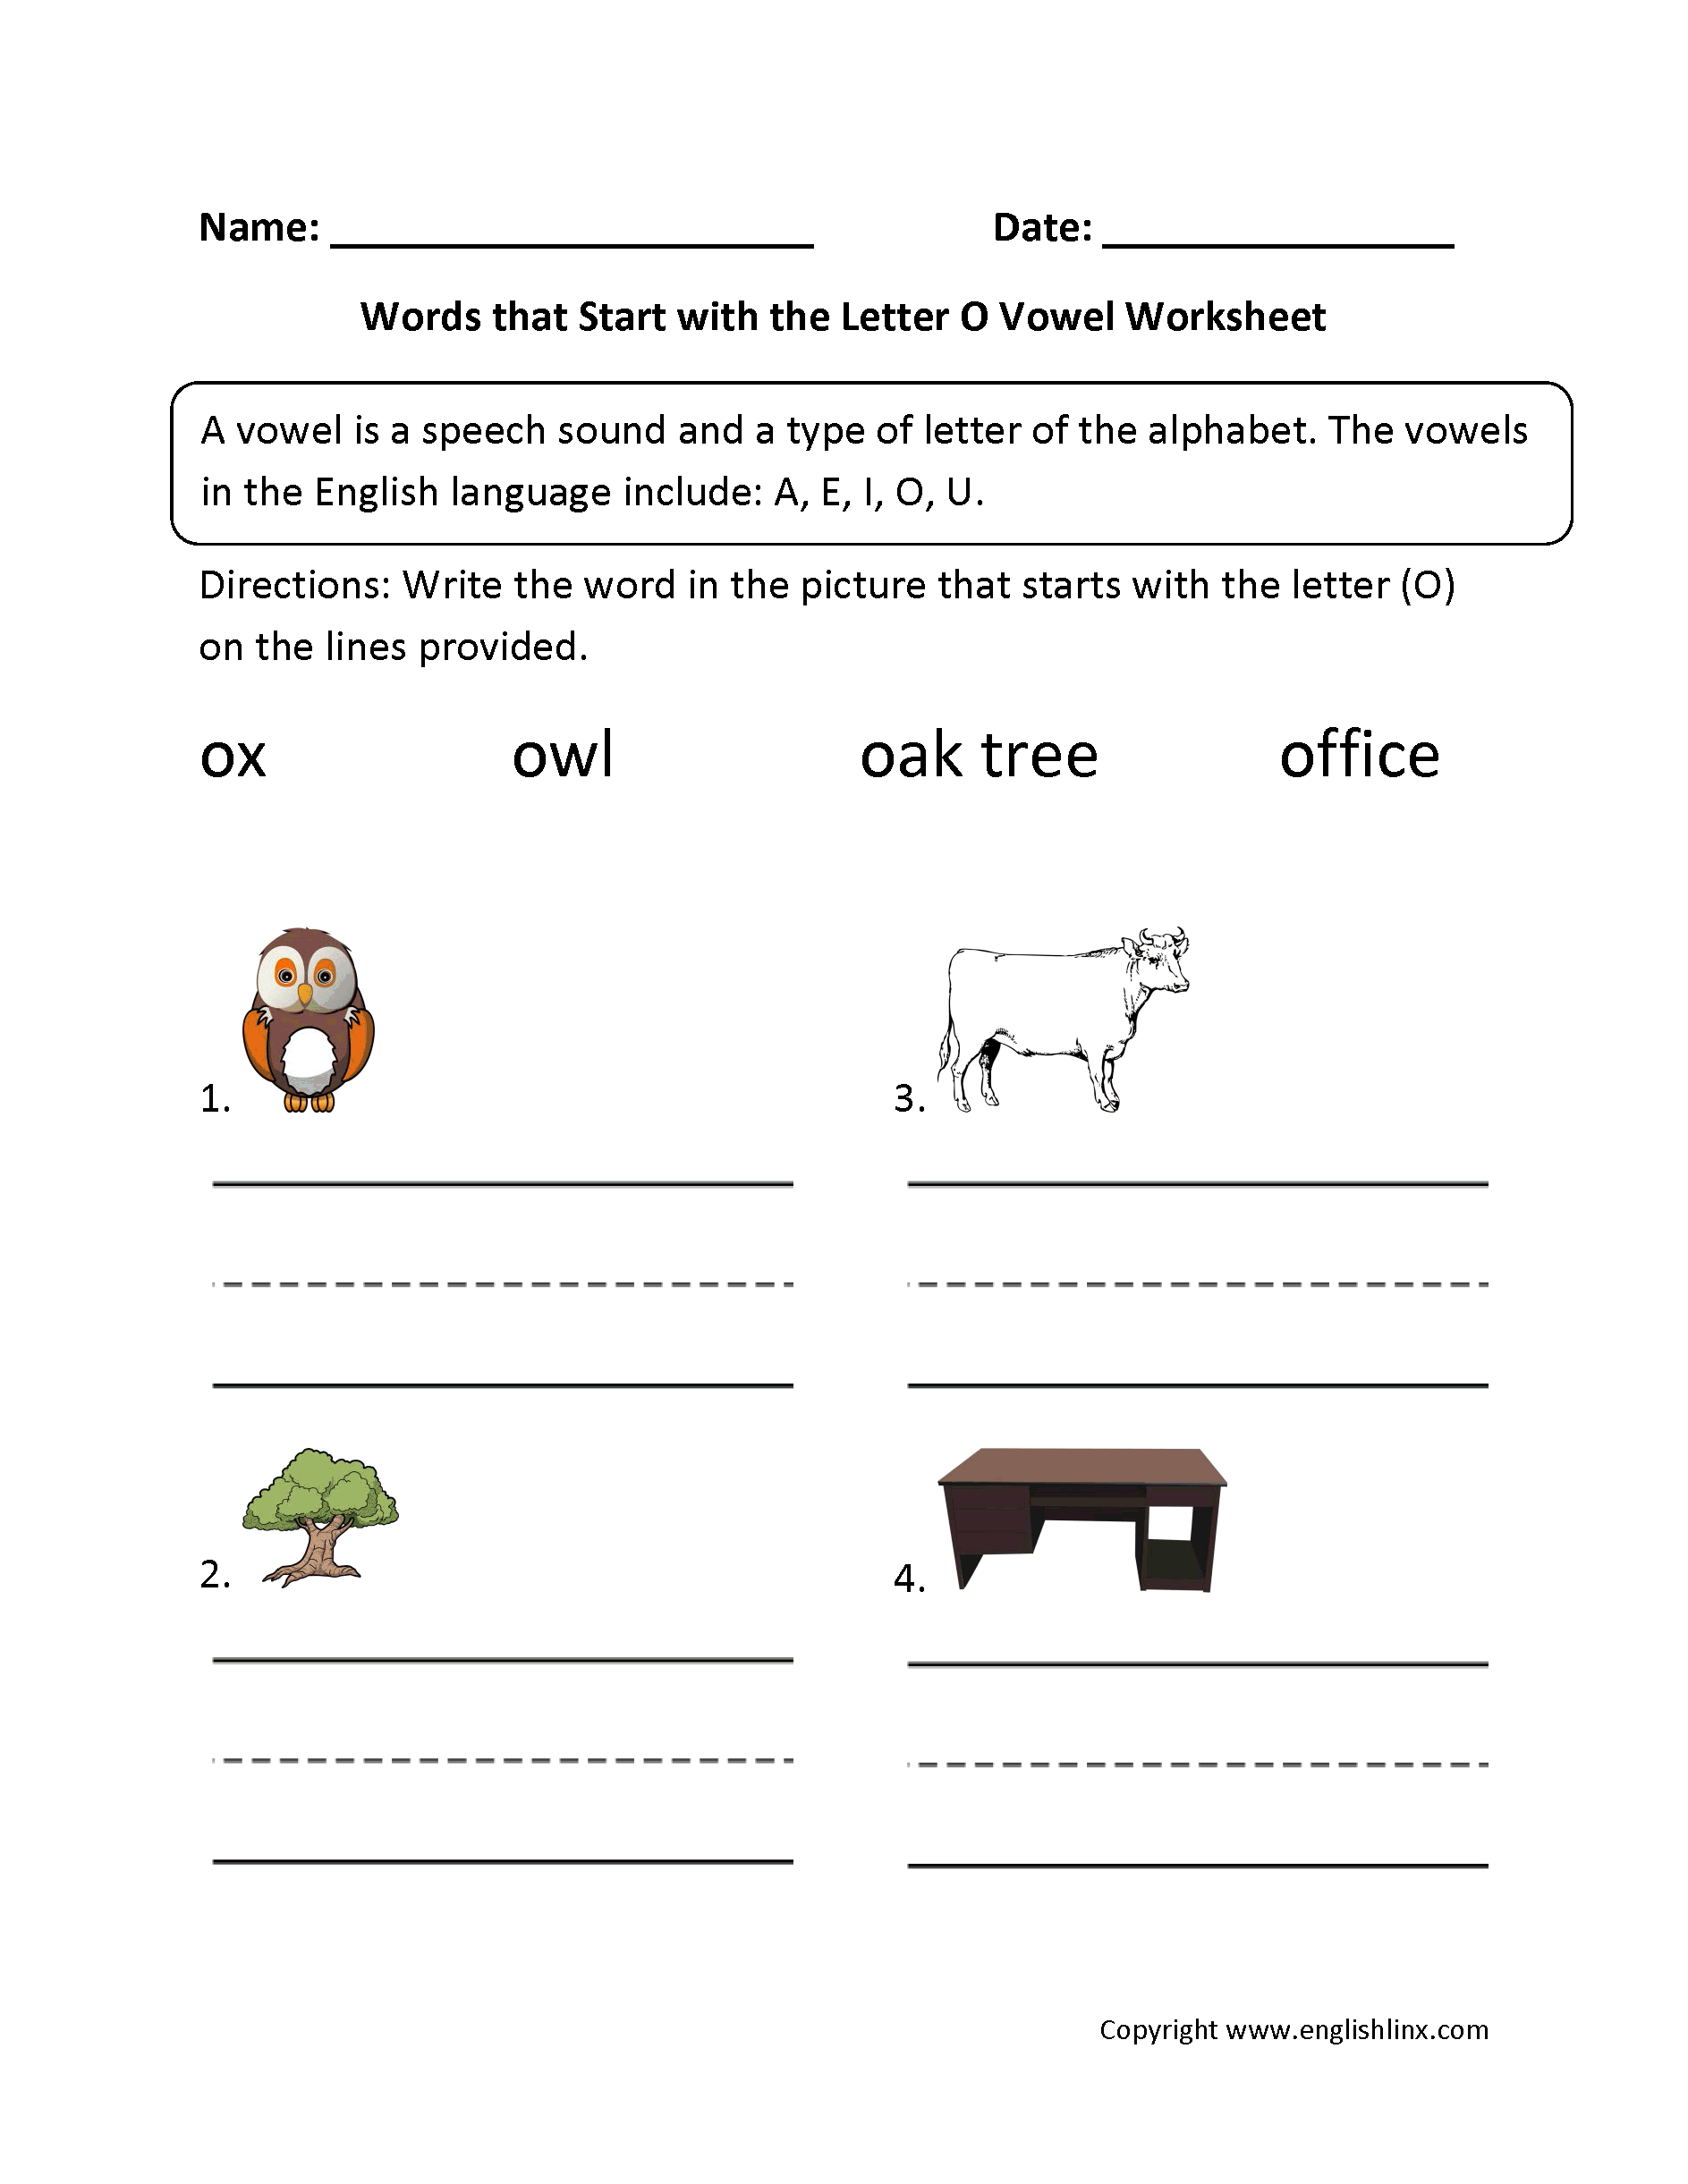 vowel-worksheets-general-vowel-worksheets